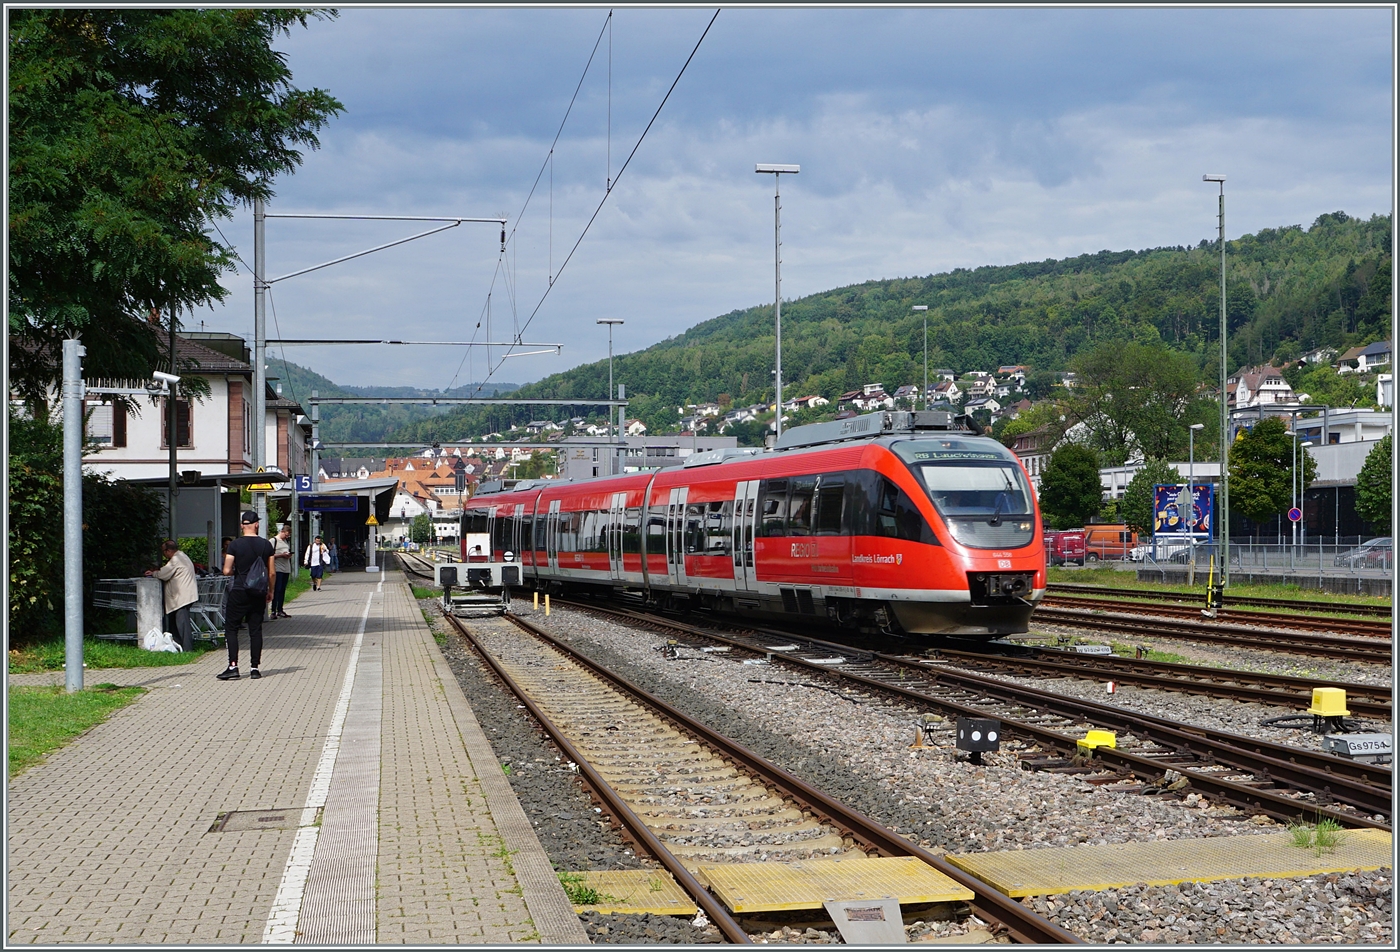 Der DB 644 558 verlässt Waldshut in Richtung Lauchringen.

6. Sept. 2022